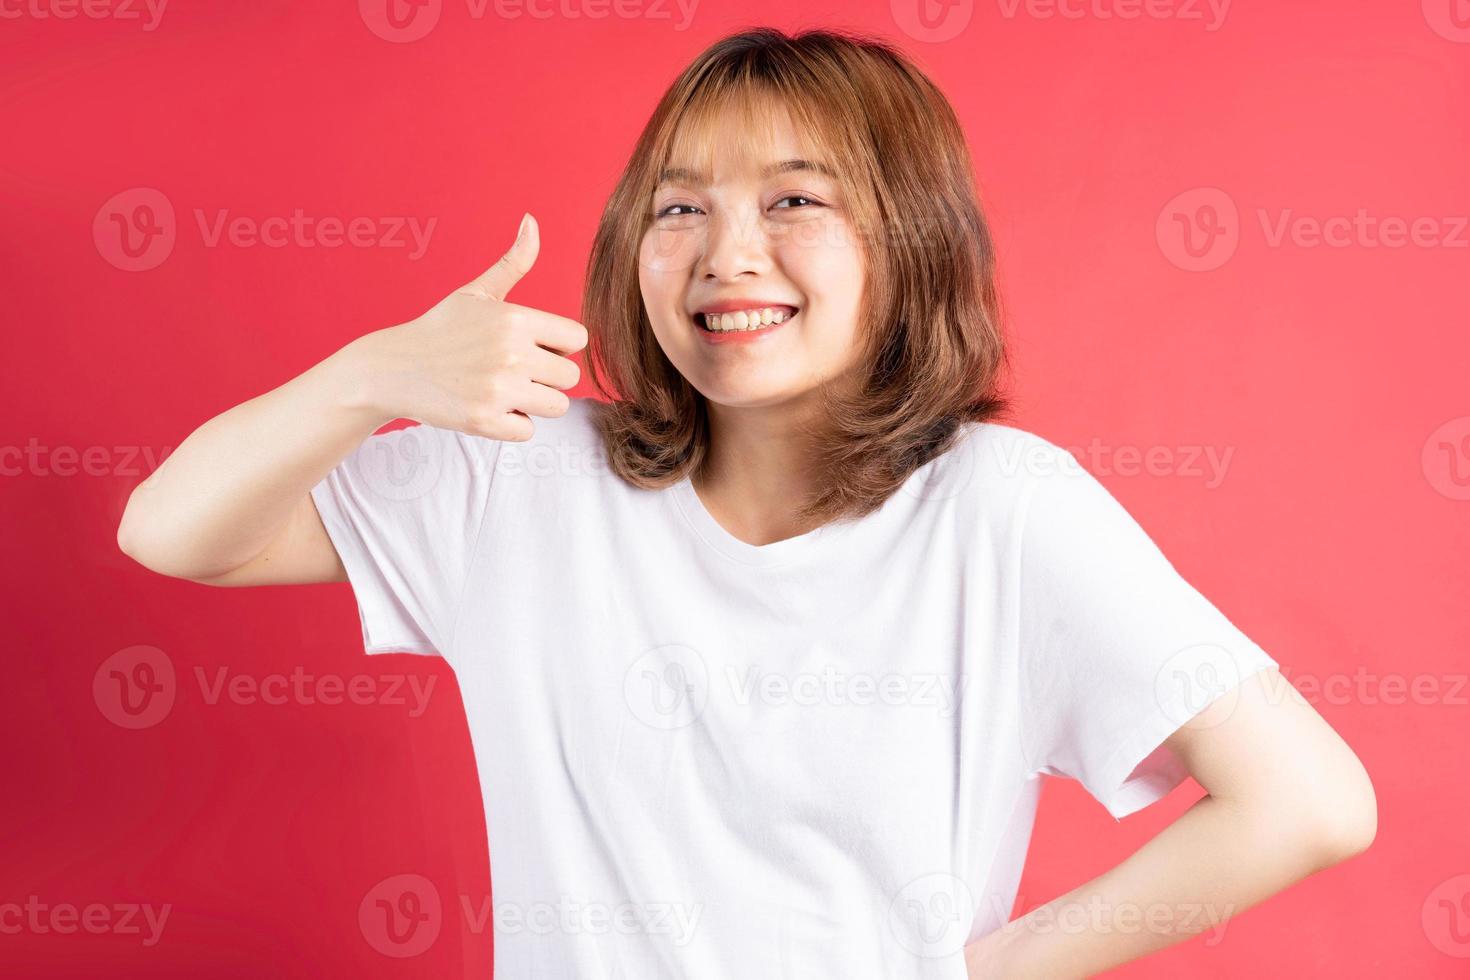 jong Aziatisch meisje met vrolijke gebaren en uitdrukkingen op achtergrond foto